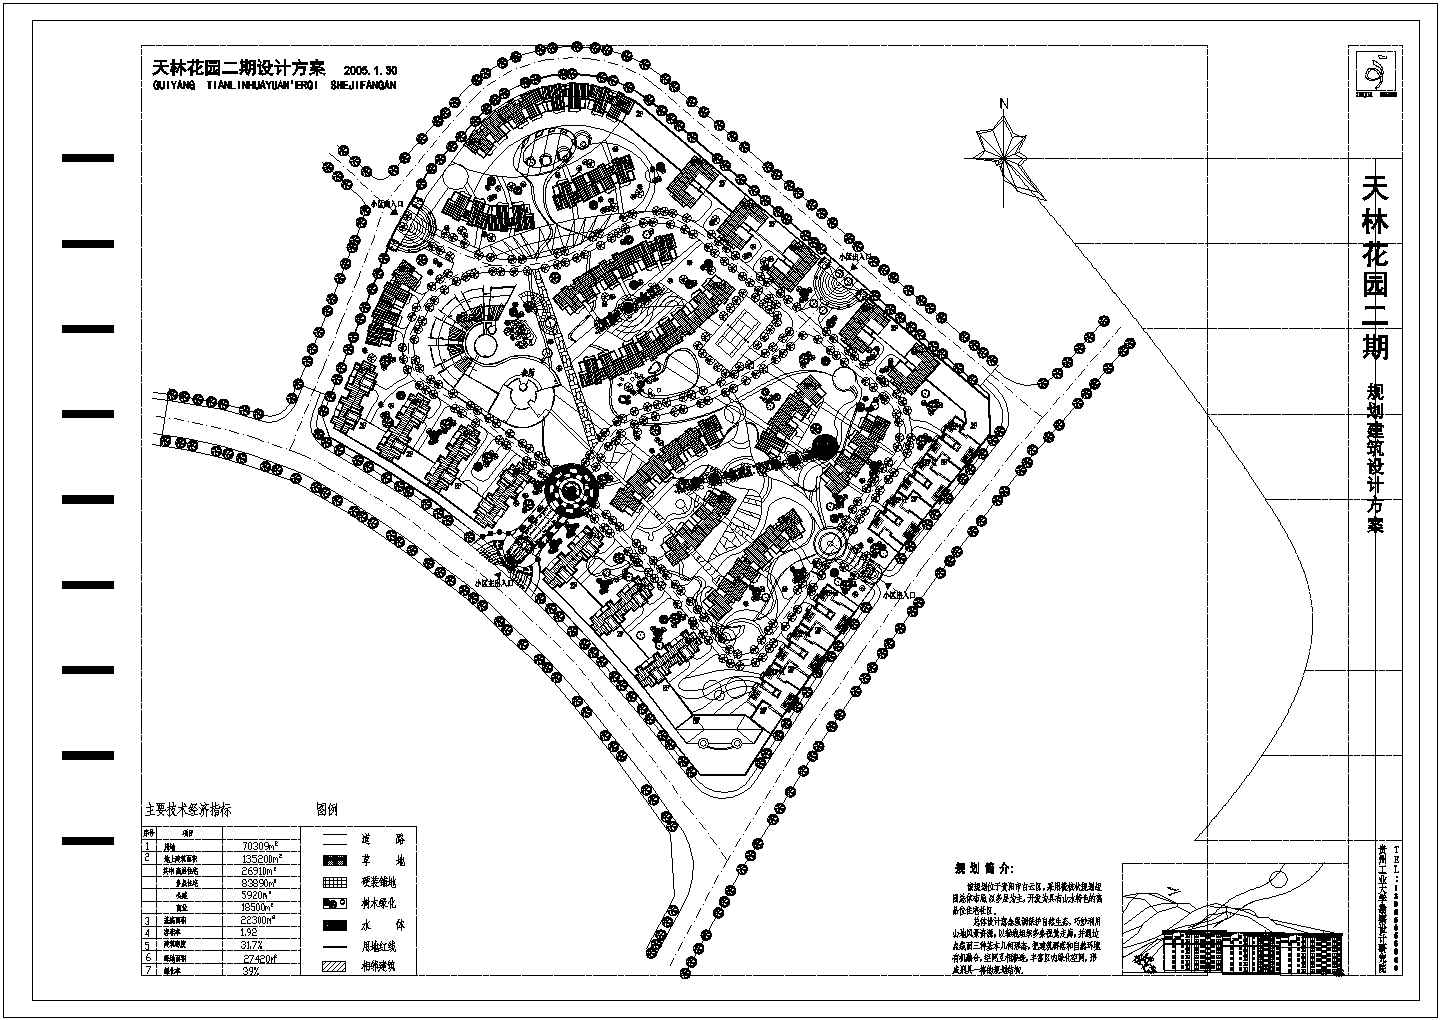 天林花园规划方案（某甲级院设计）